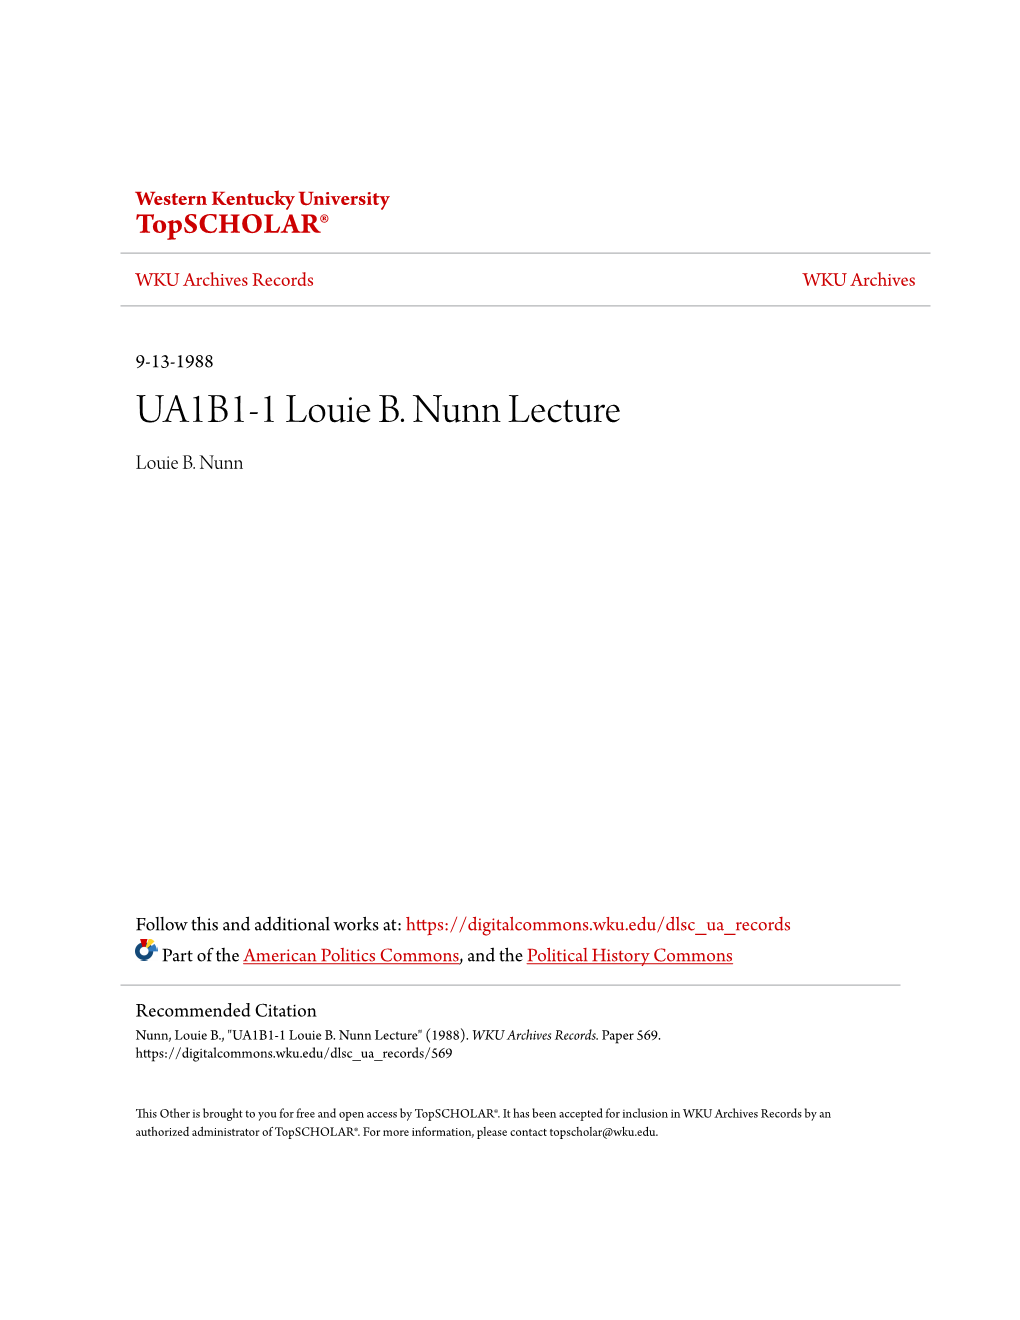 UA1B1-1 Louie B. Nunn Lecture Louie B